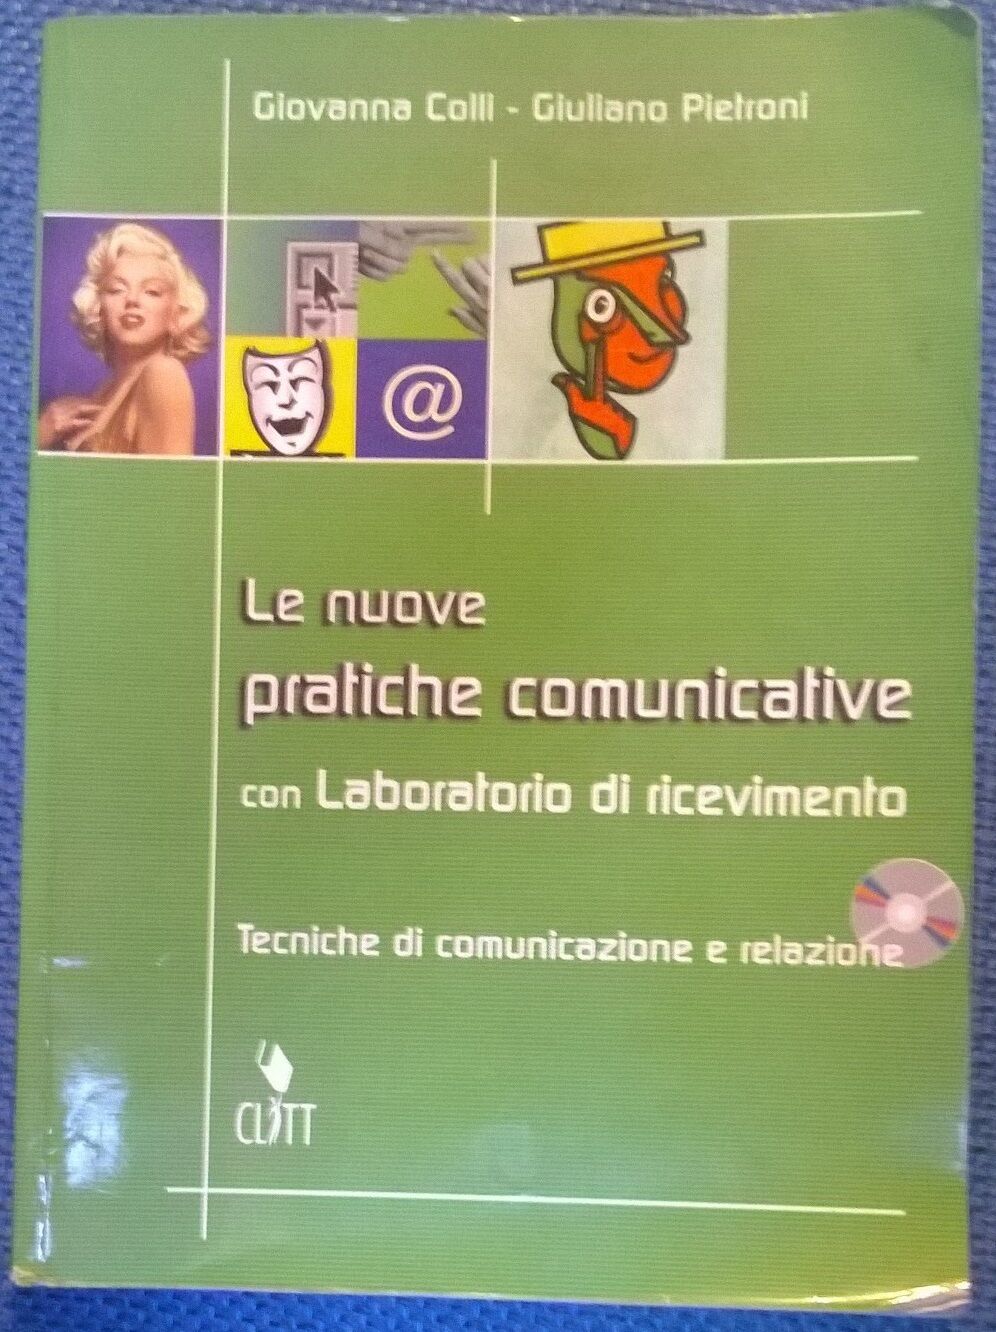 Le nuove pratiche comunicative - G. Colli, G. Petroni,  2005,  Clitt - L